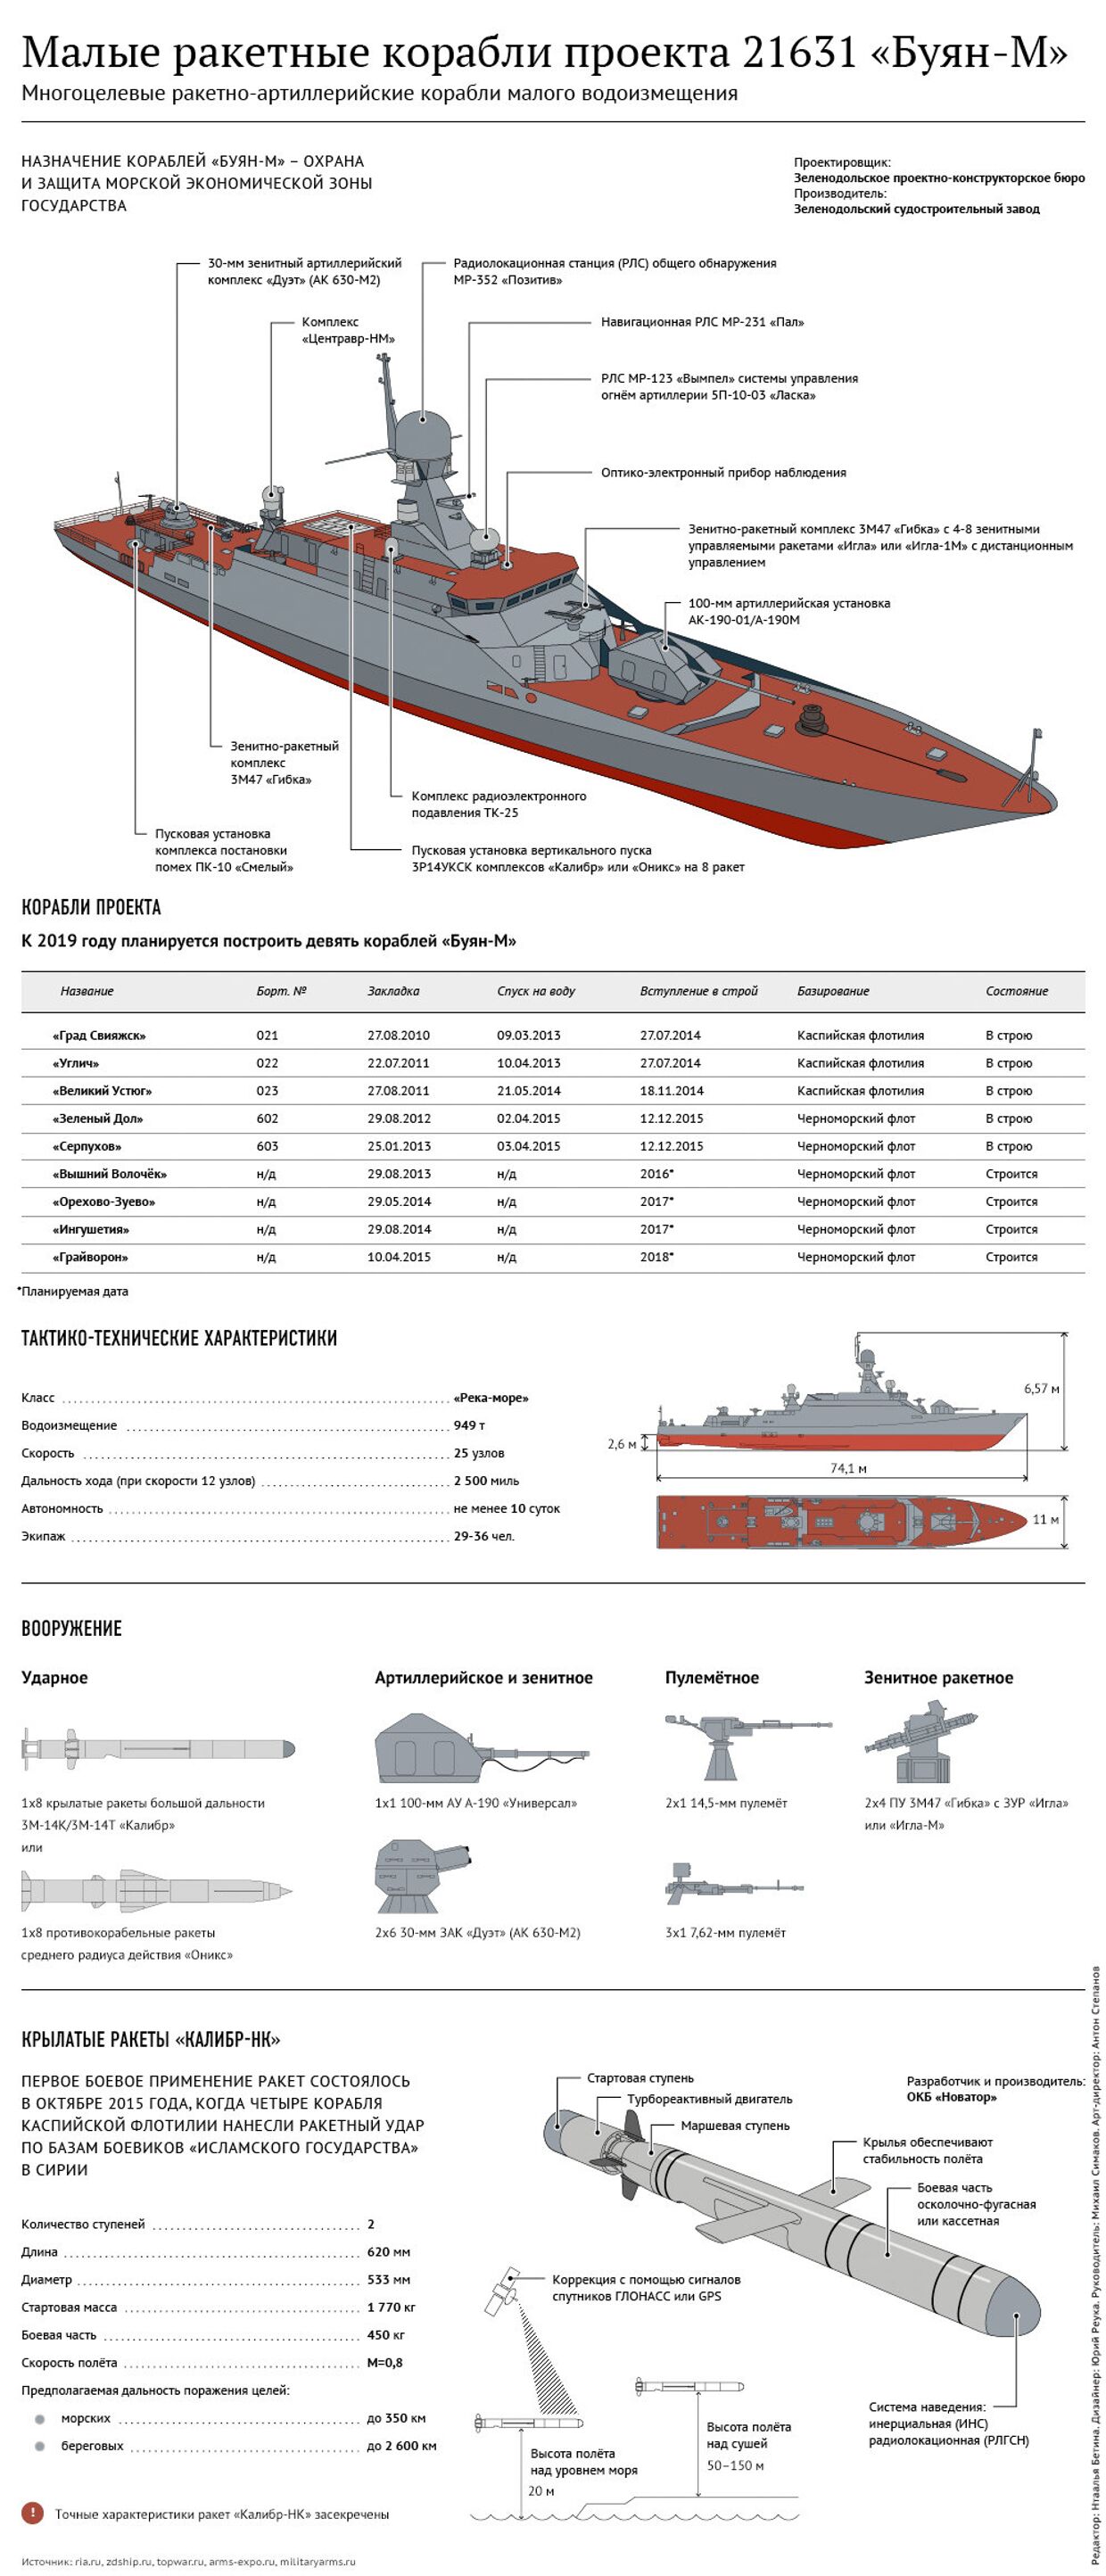 Характеристики и вооружение ракетных кораблей проекта Буян-М